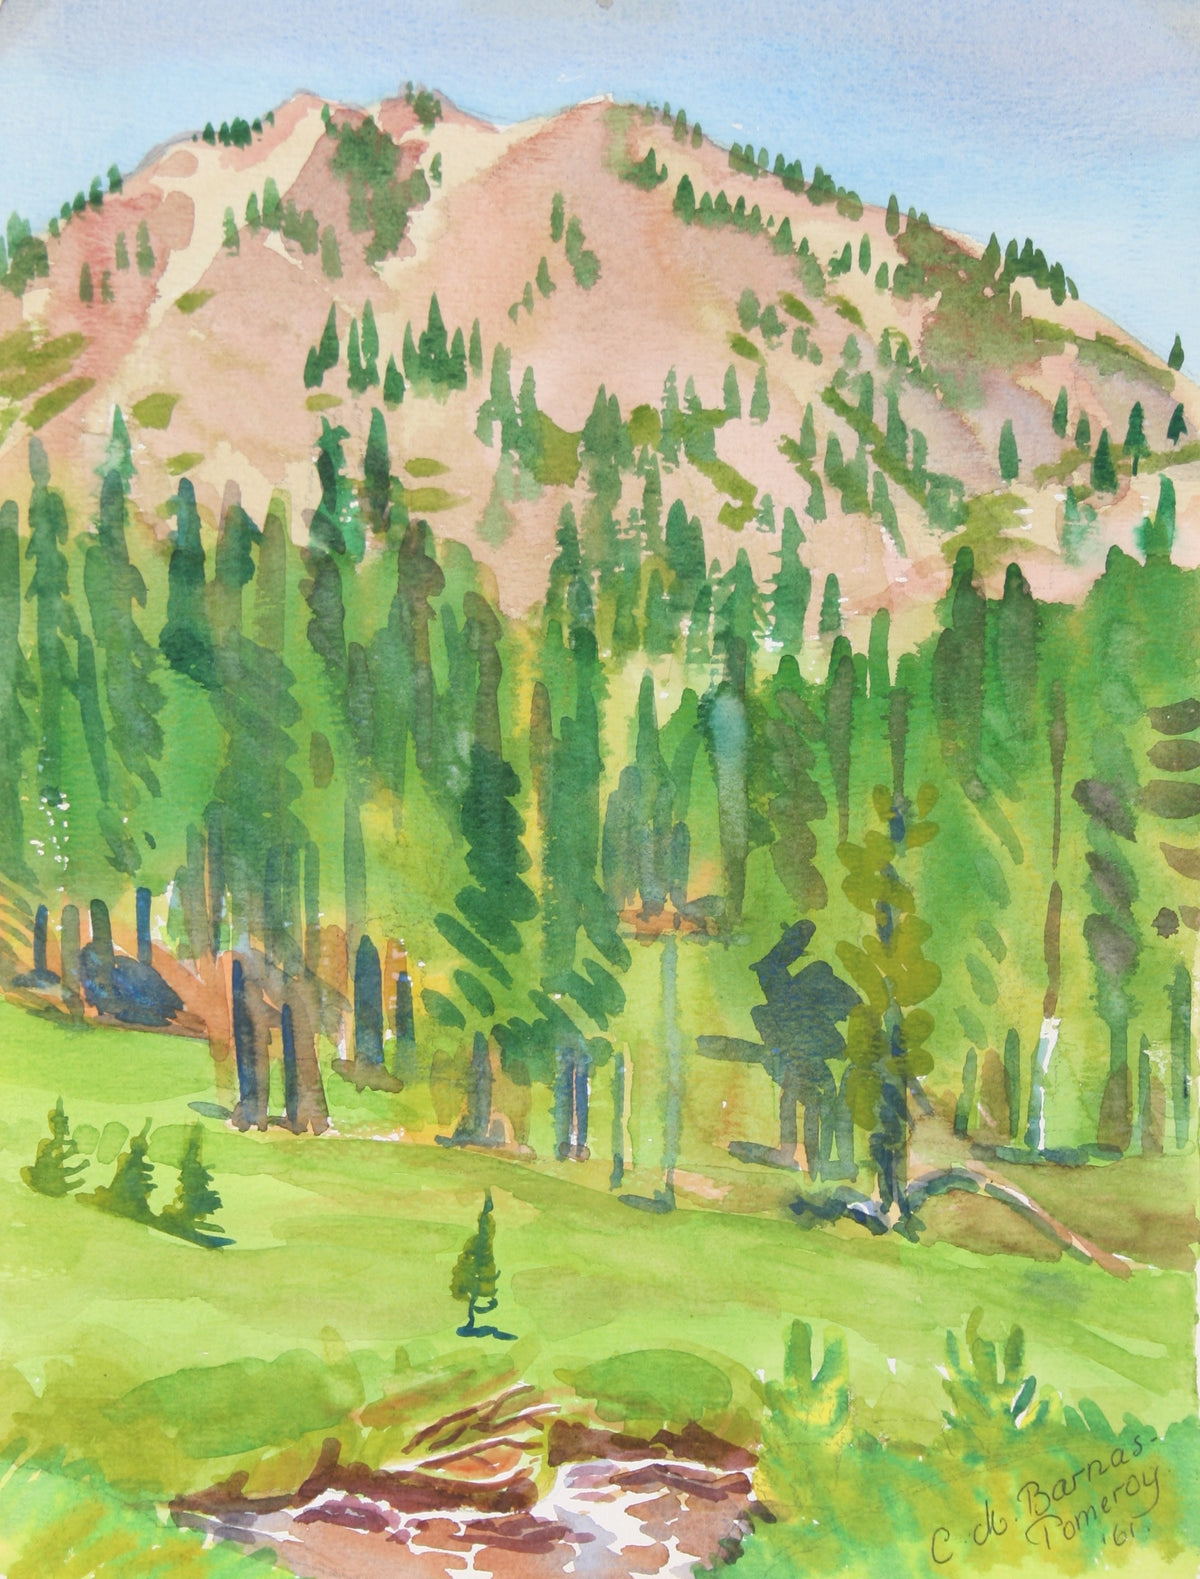 &lt;i&gt;King&#39;s Creek Meadow&lt;/i&gt;&lt;br&gt;1961 Watercolor&lt;br&gt;&lt;br&gt;#72021